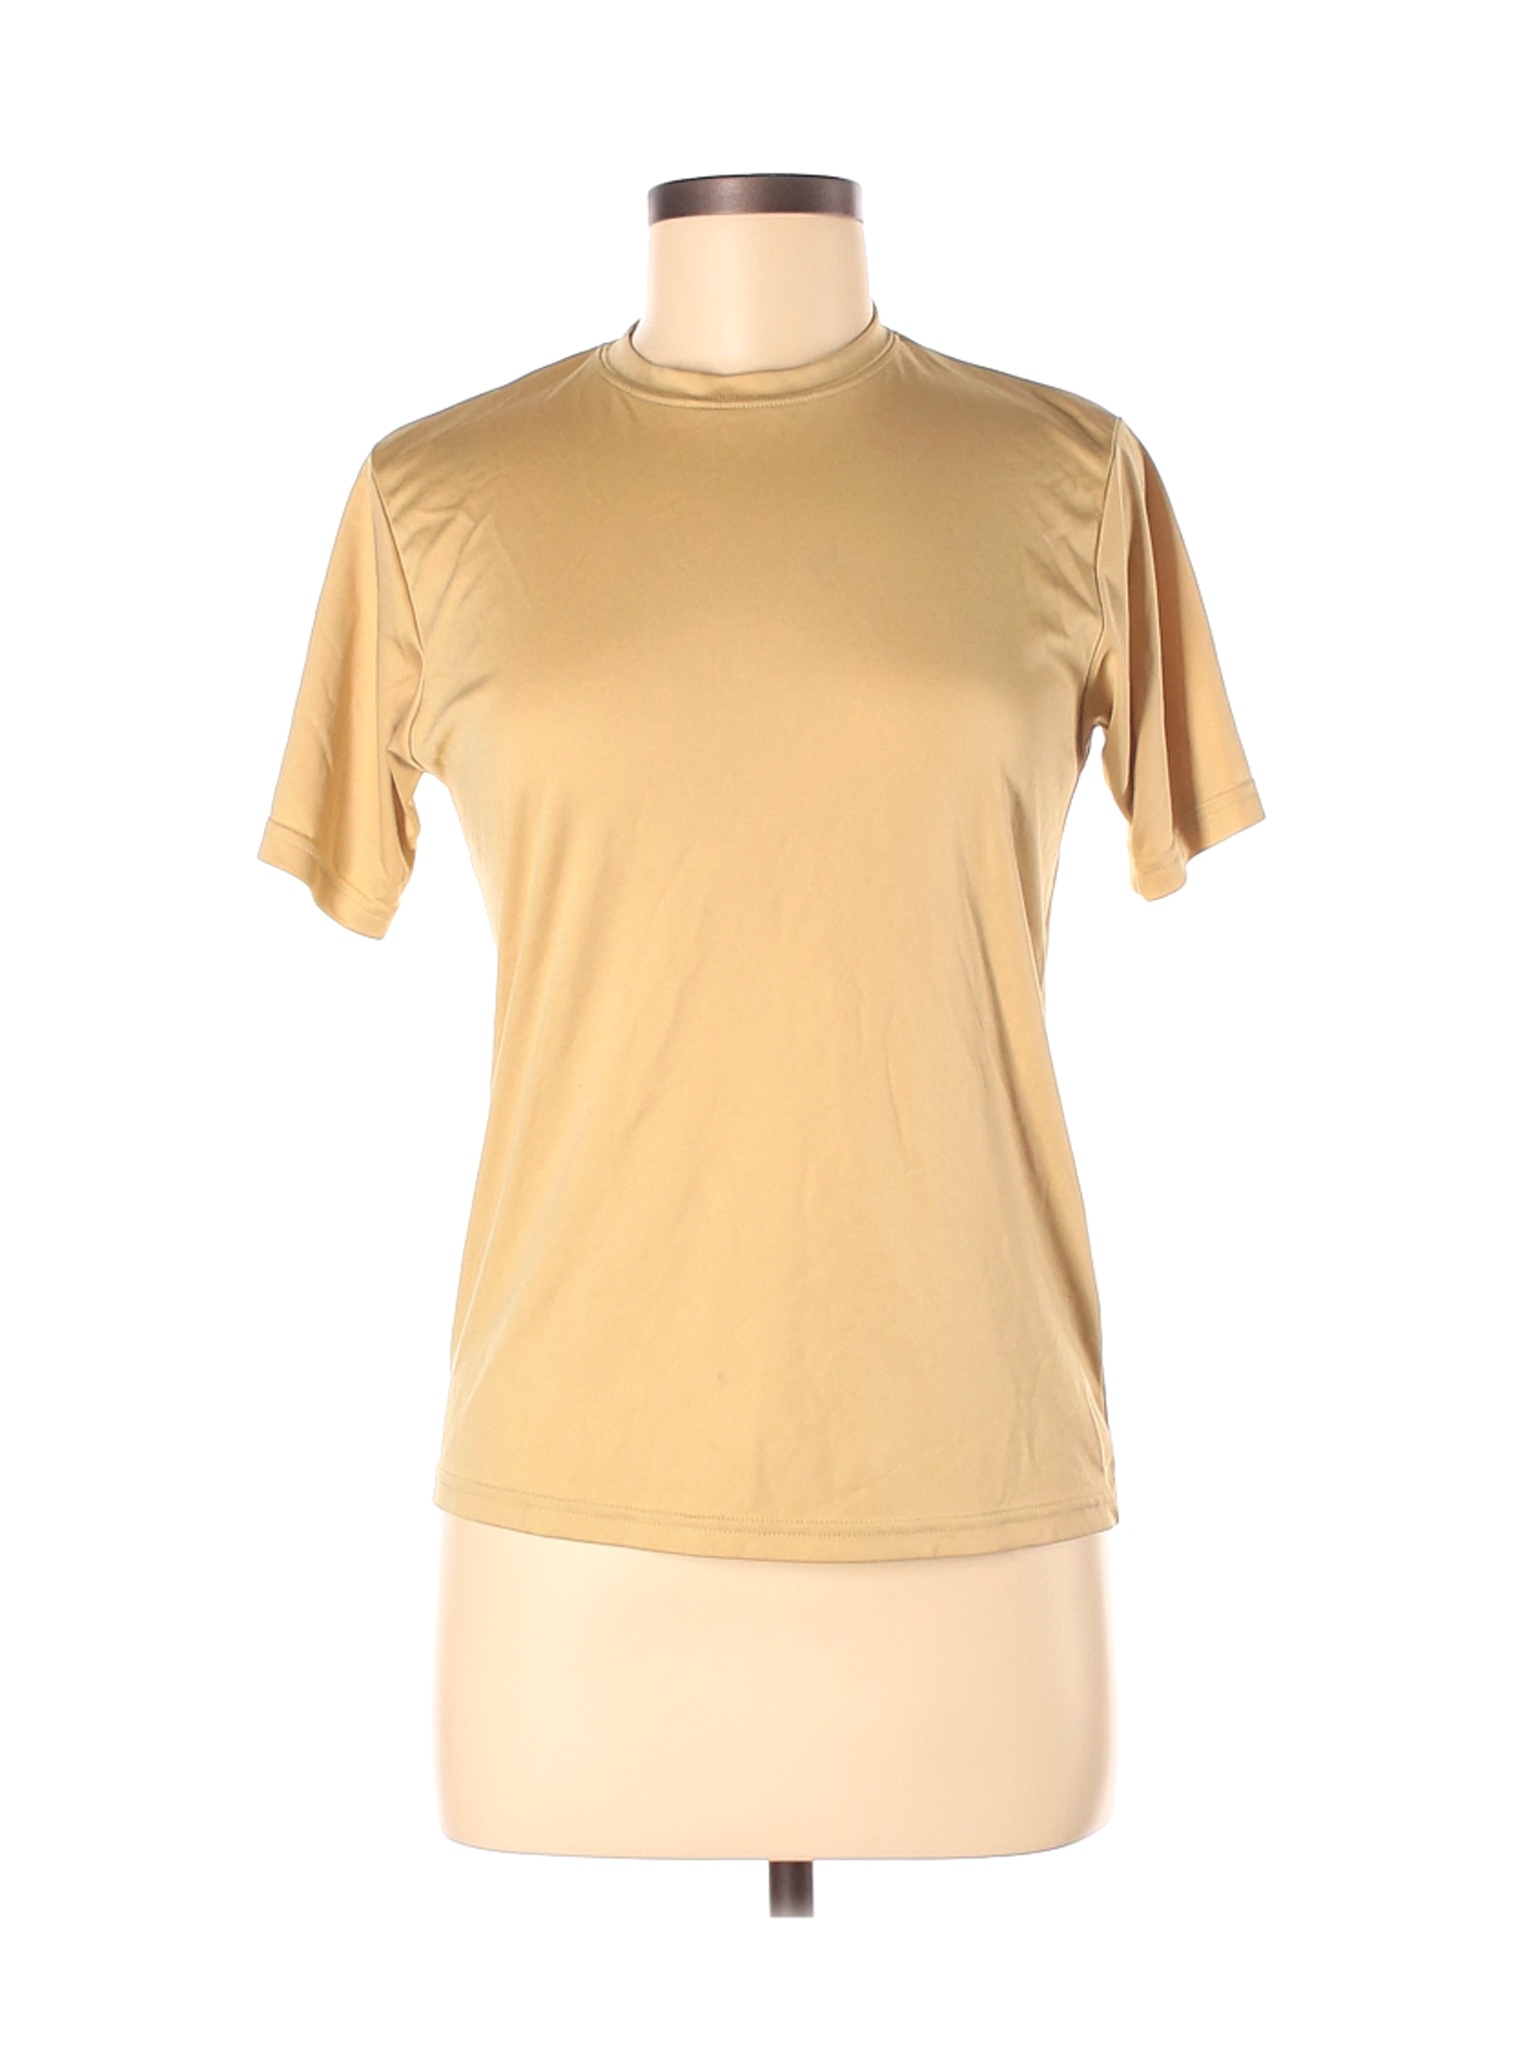 A4 Women Yellow Active T-Shirt M | eBay